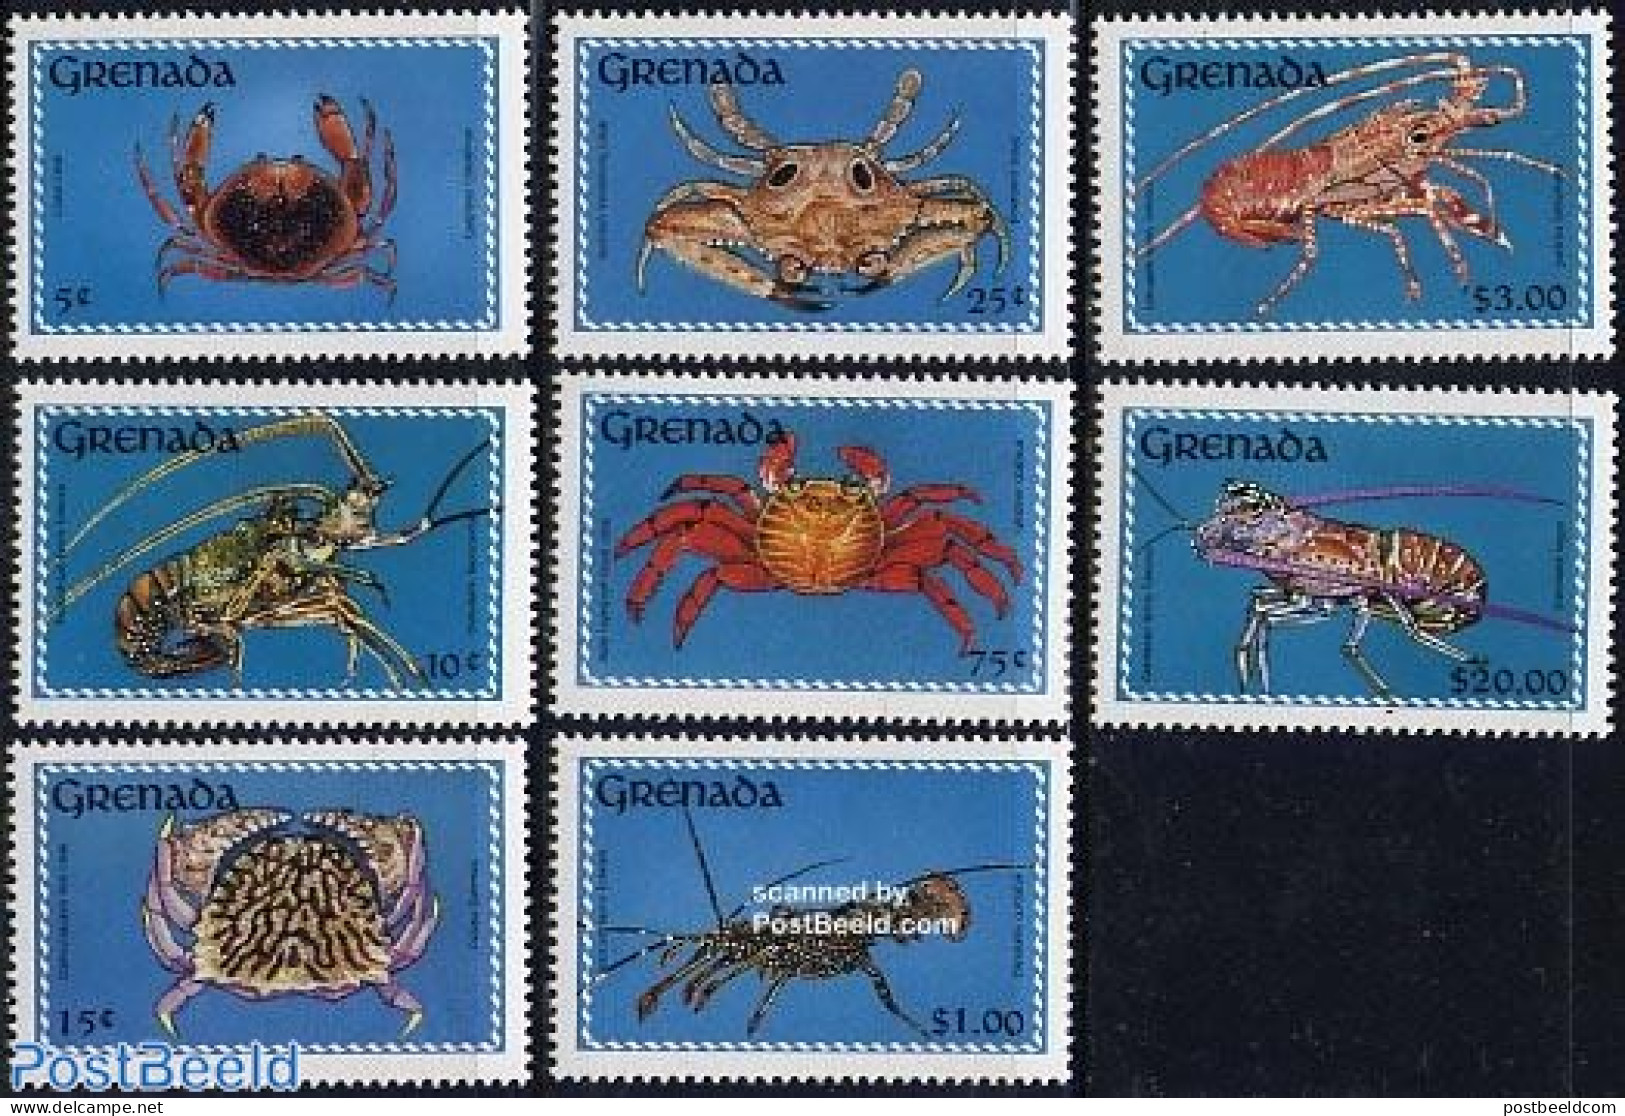 Grenada 1990 Crabs 8v, Mint NH, Nature - Shells & Crustaceans - Crabs And Lobsters - Mundo Aquatico